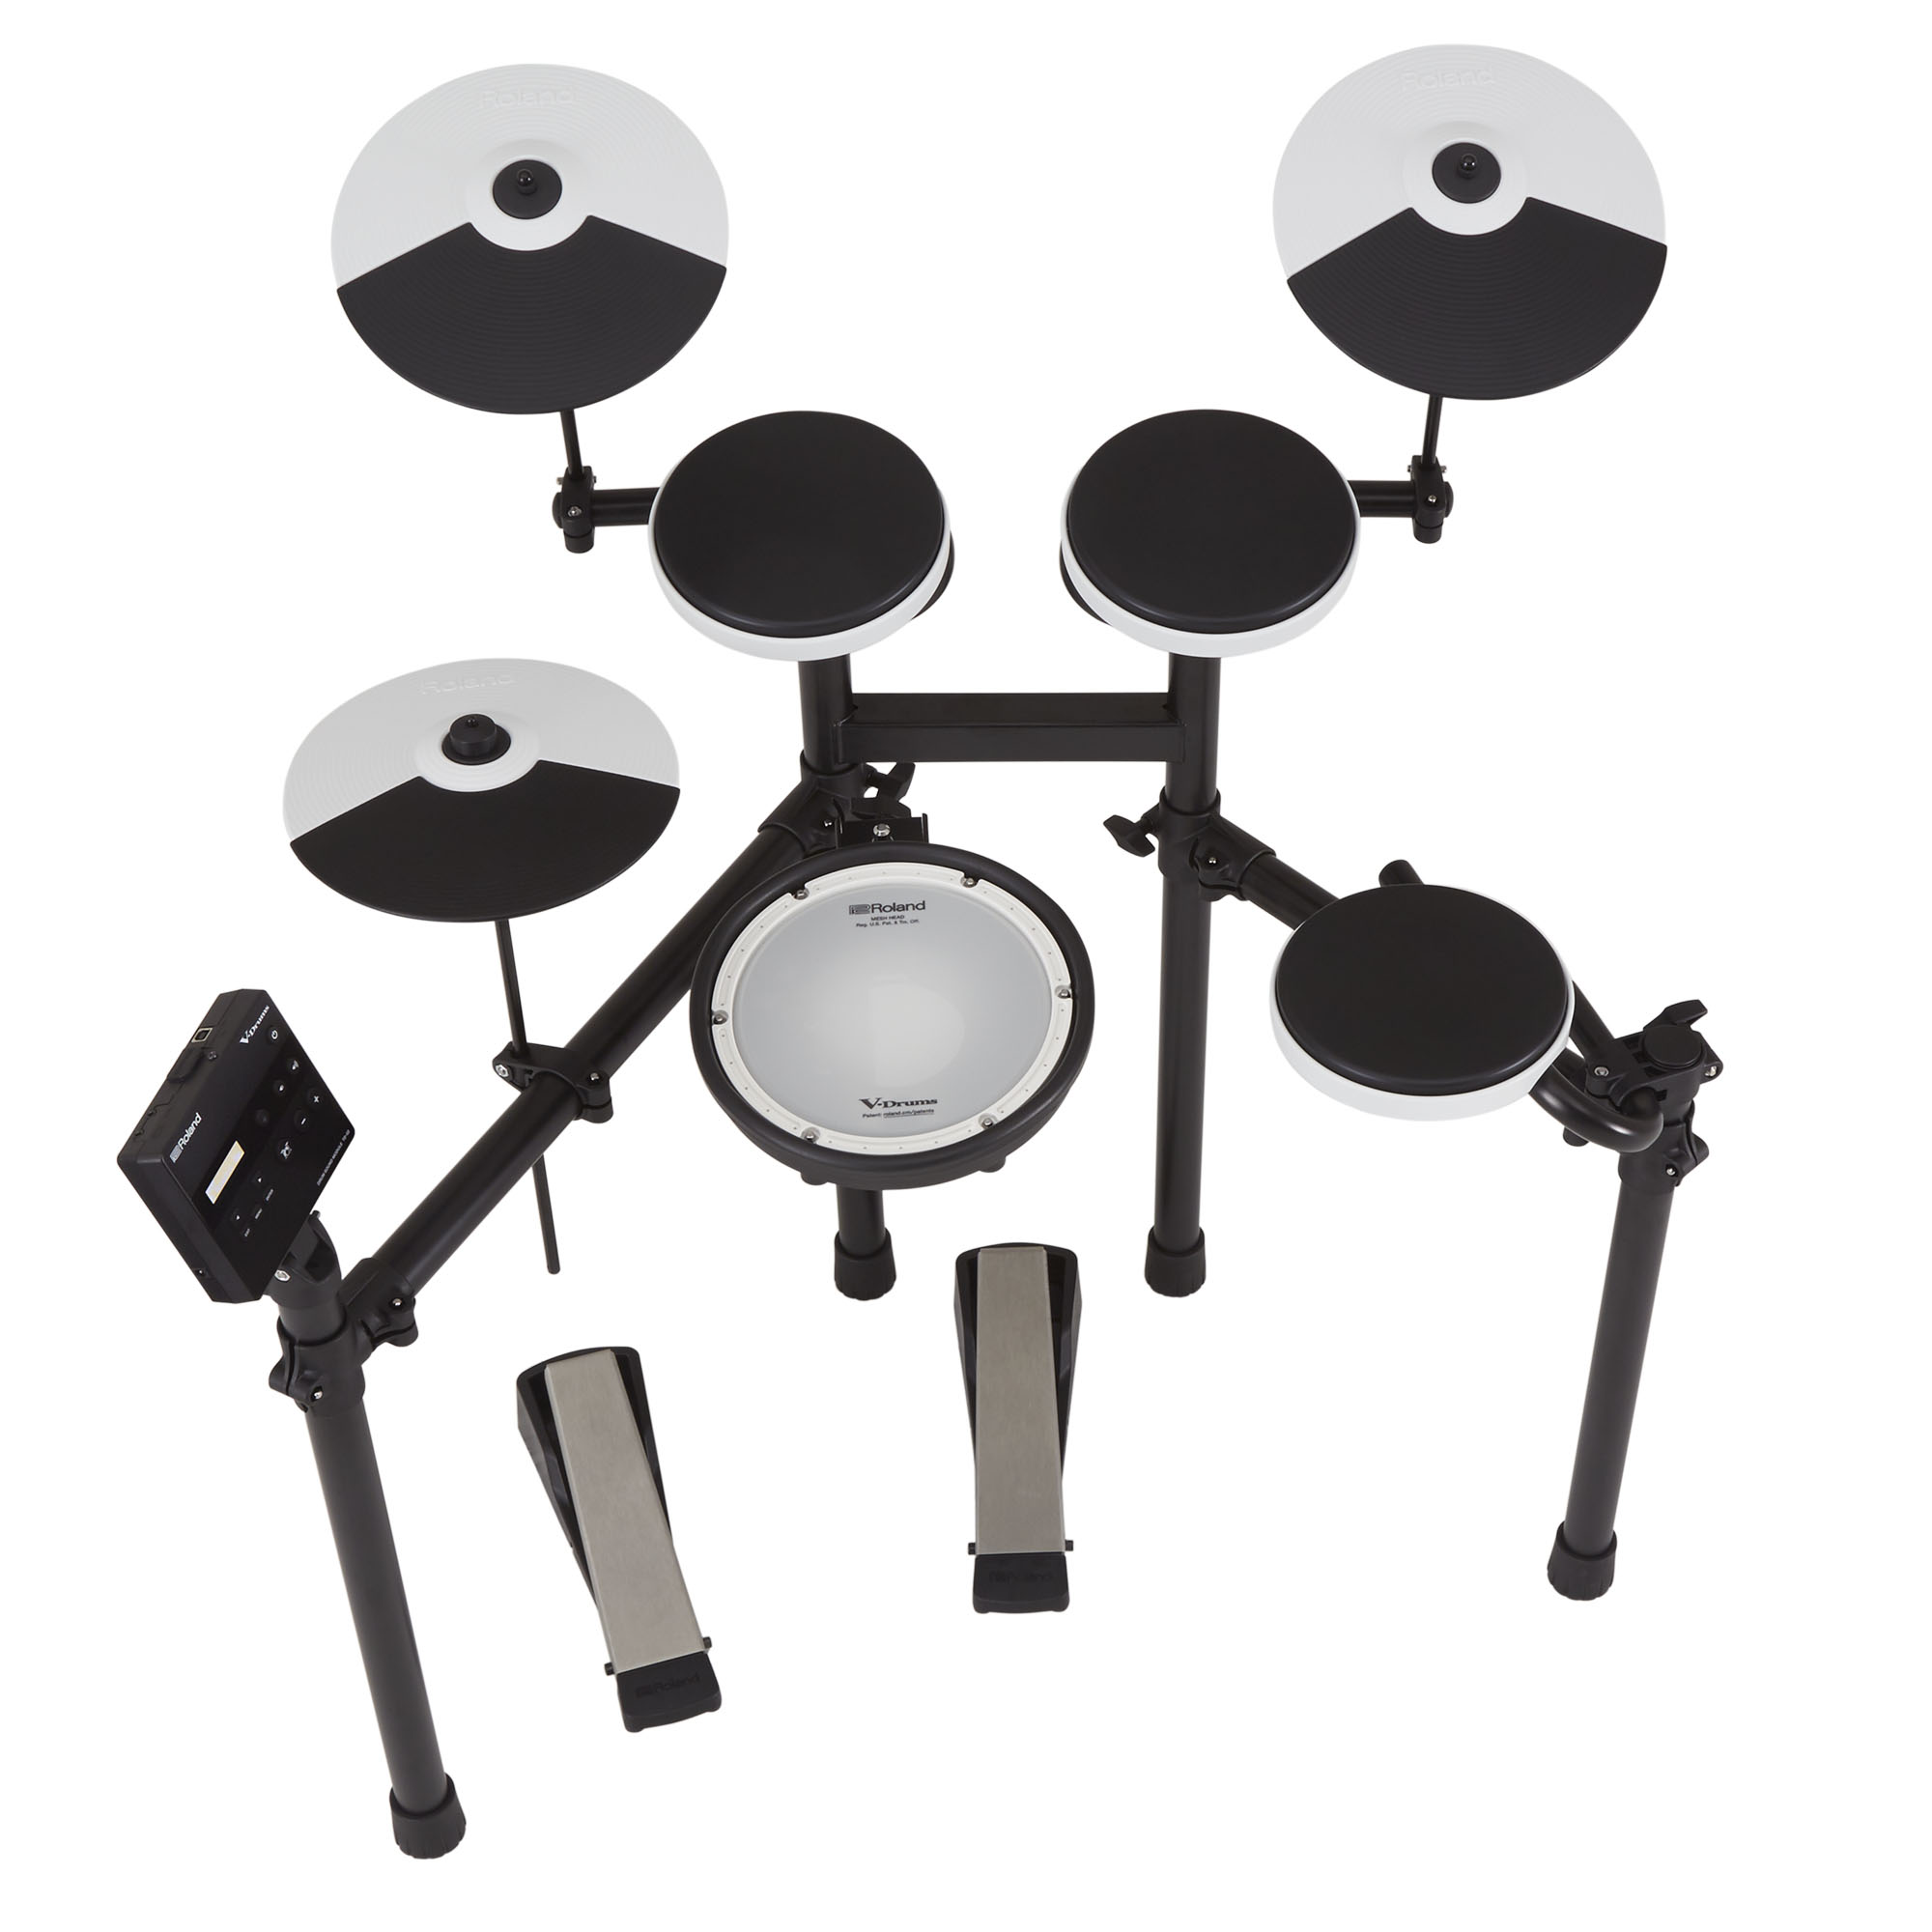 Roland Td-02kv V-drums - Electronic drum kit & set - Variation 1